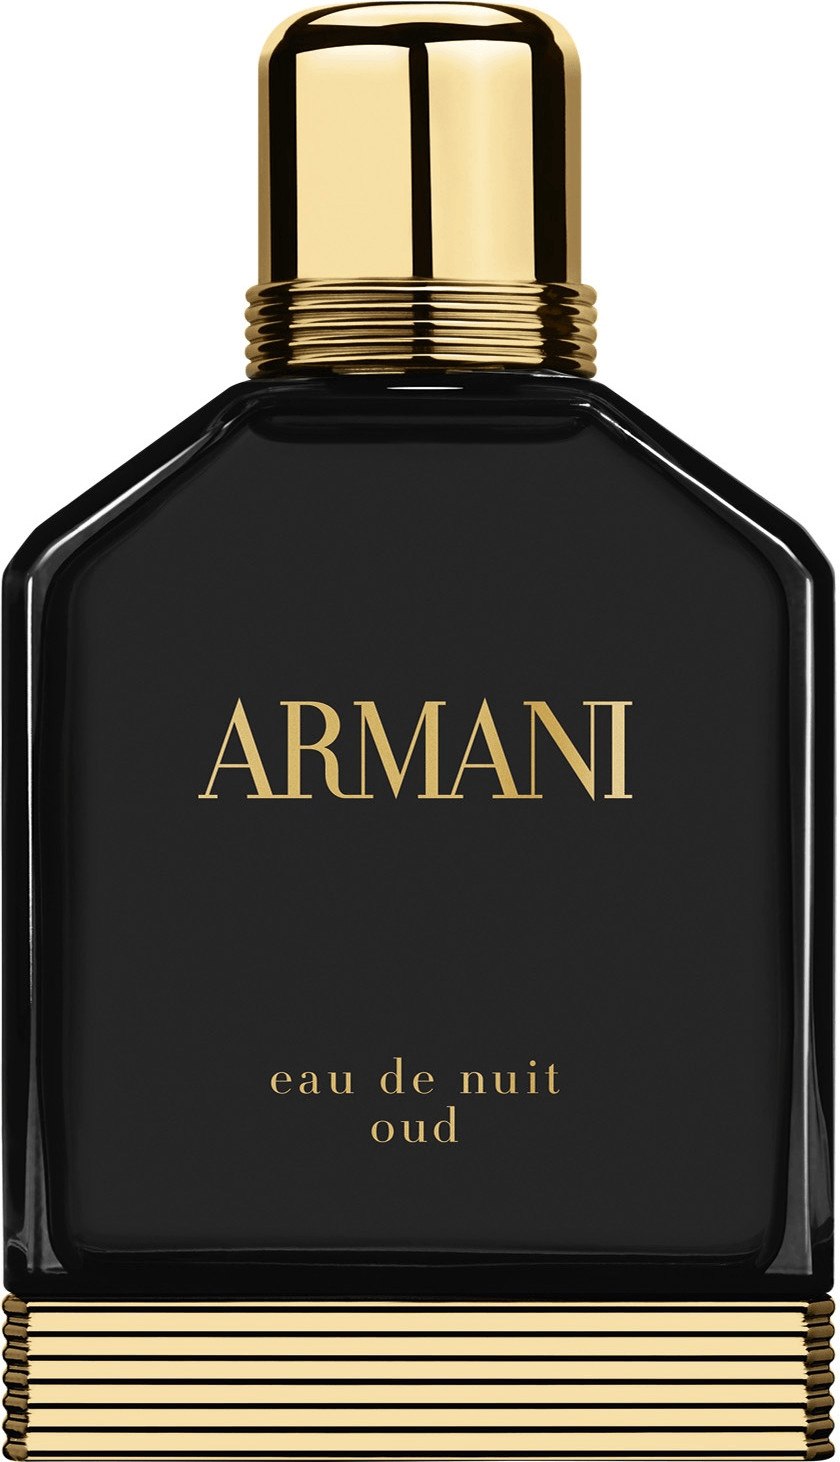 Giorgio Armani Eau de Nuit Oud Eau de Parfum (100ml)